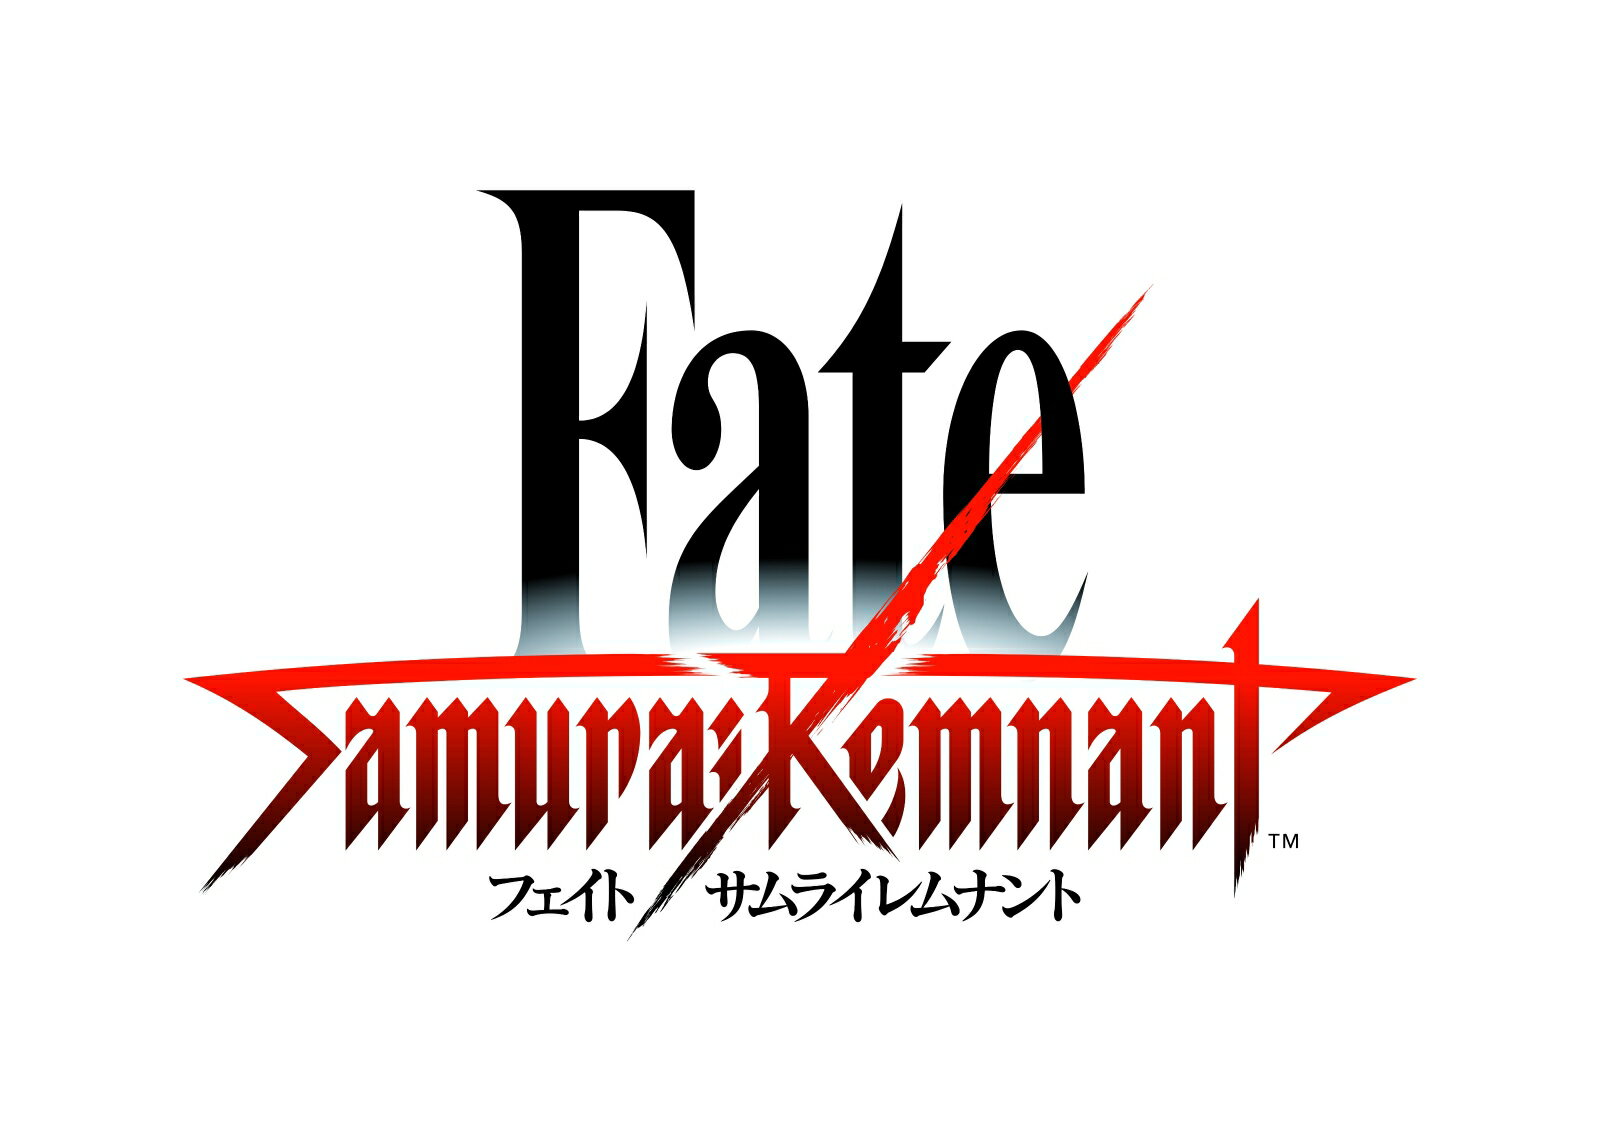 Fate/Samurai Remnant TREASURE BOX グッズのみ（ゲームソフトなし）